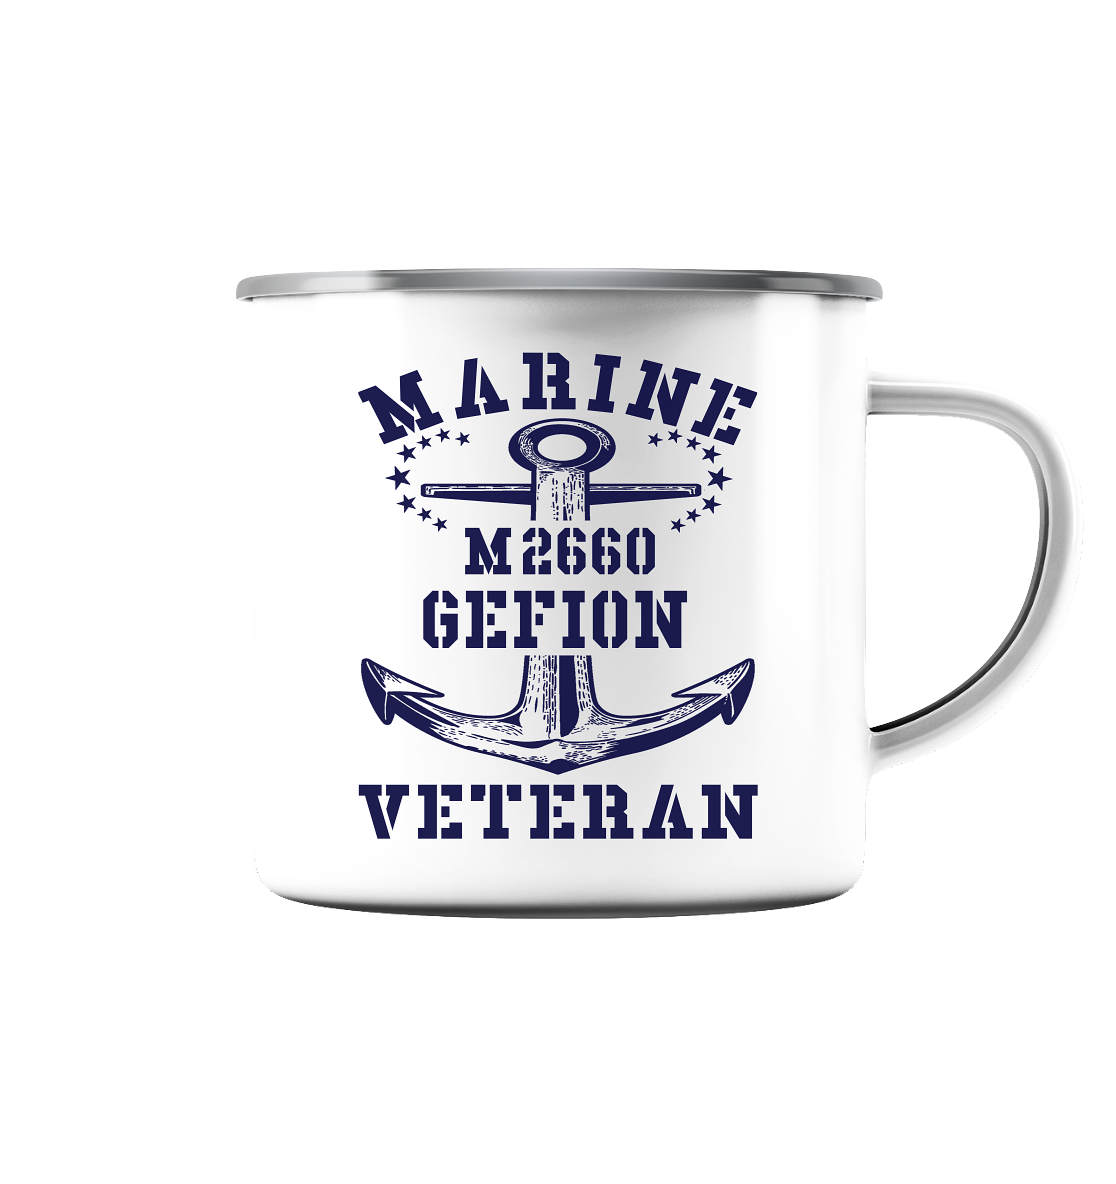 BiMi M2660 GEFION Marine Veteran  - Emaille Tasse (Silber)